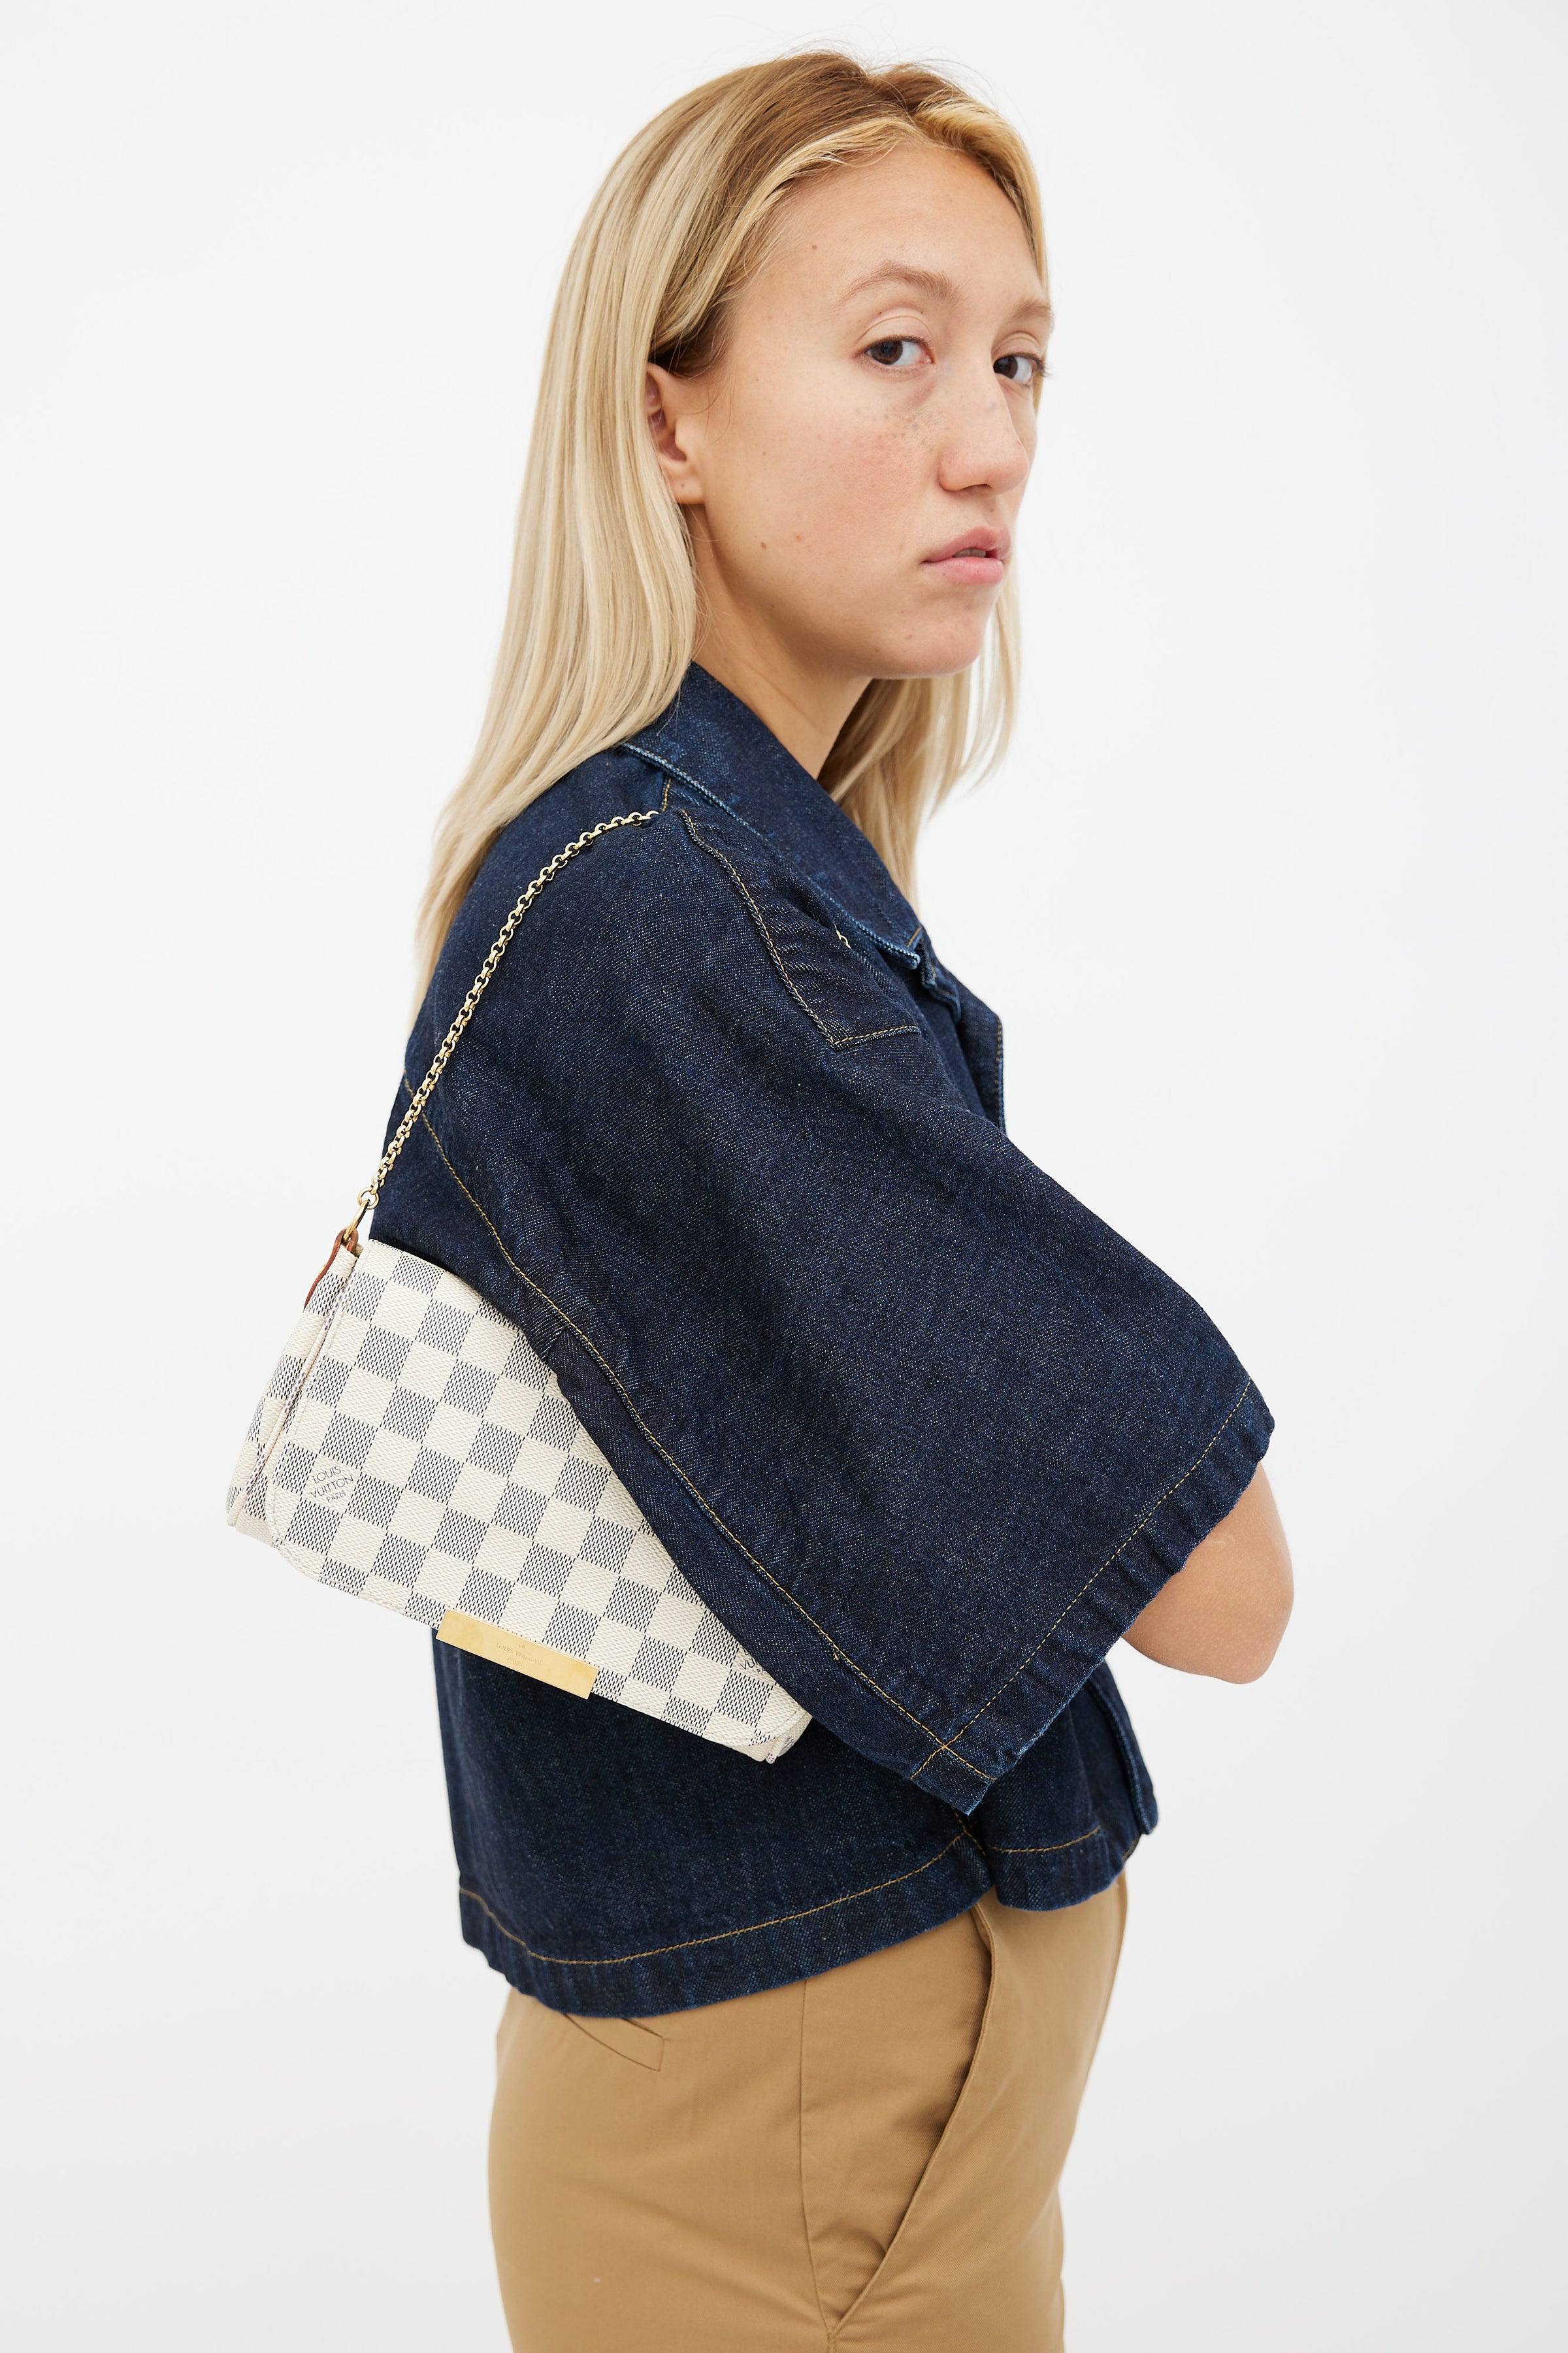 Louis Vuitton // 2014 Damier Azur Favorite MM Bag – VSP Consignment